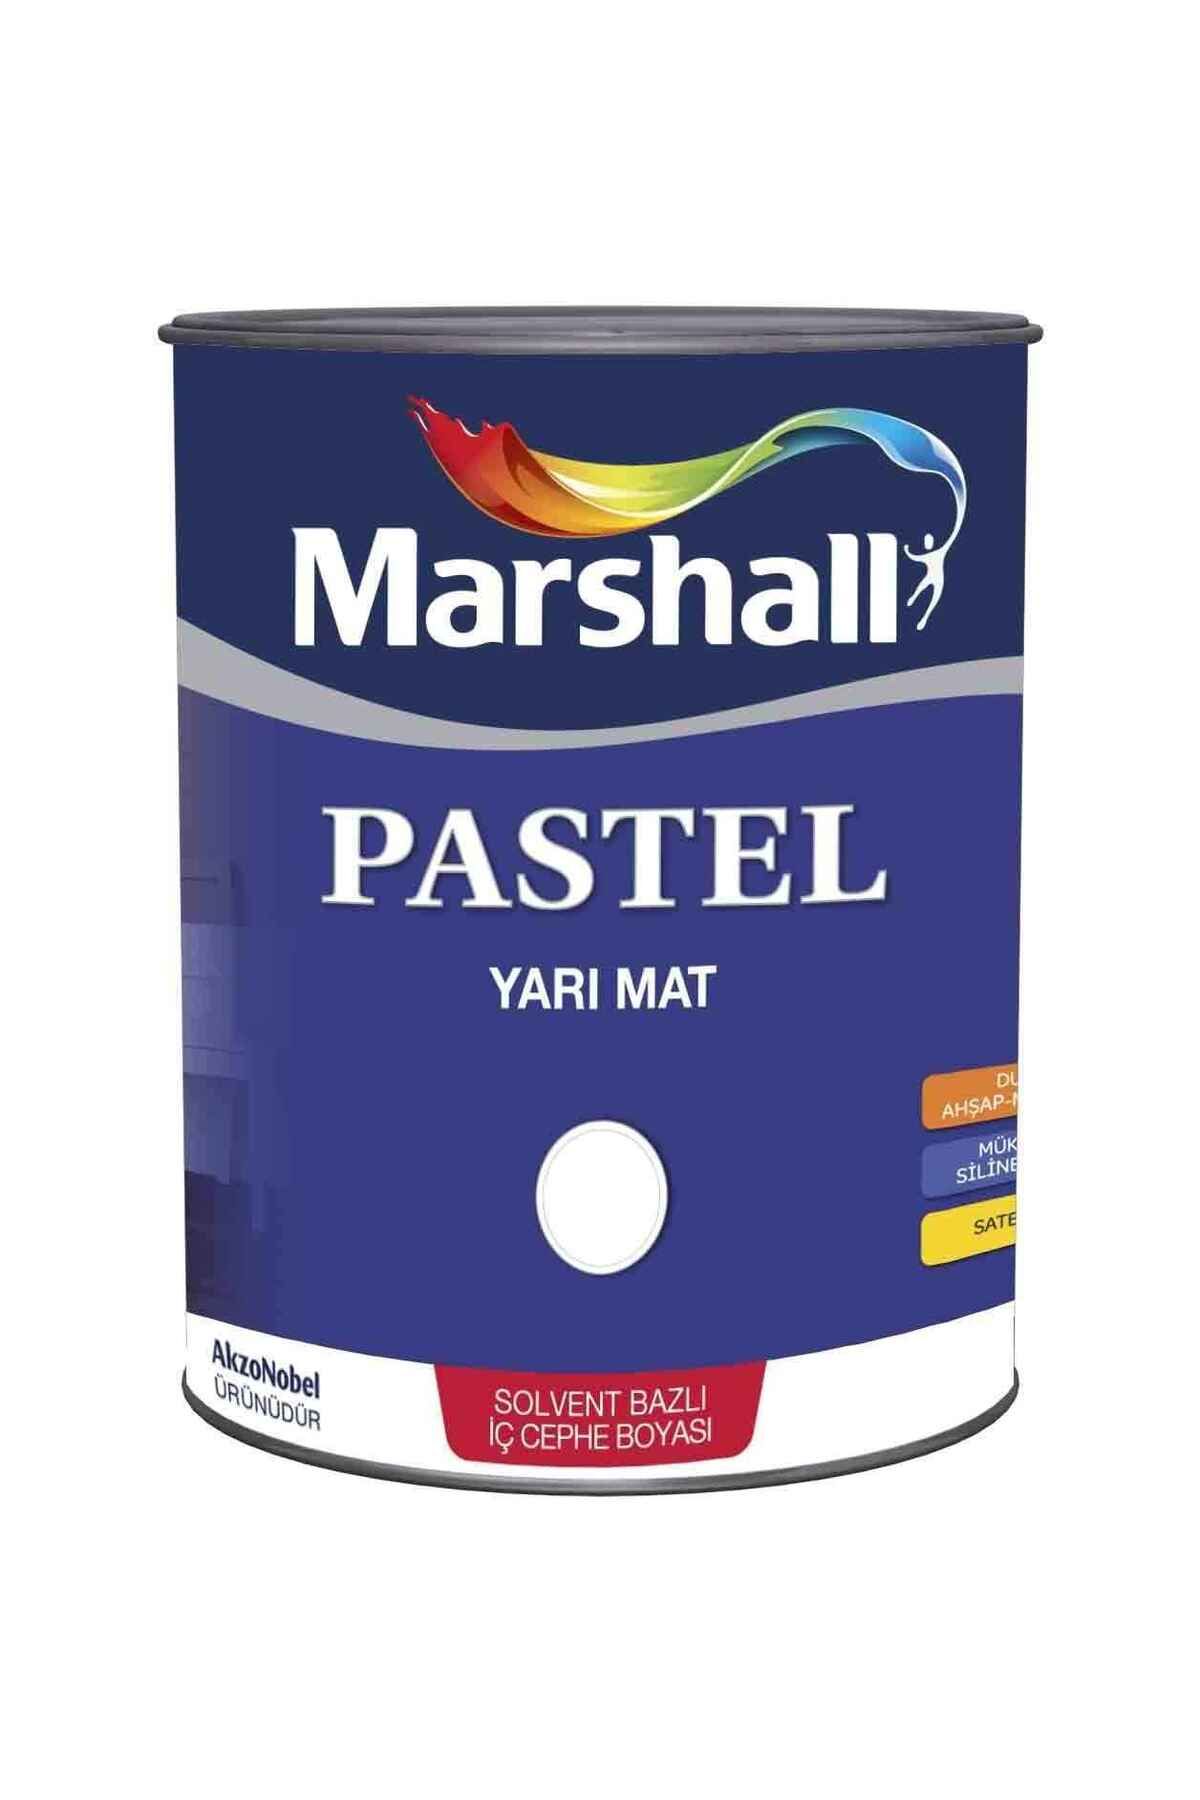 Marshall Pastel Yarı Mat Ahşap-metal-duvar Boyası Beyaz 0.75lt=1kg-tam Silinebilir-saten Dokulu